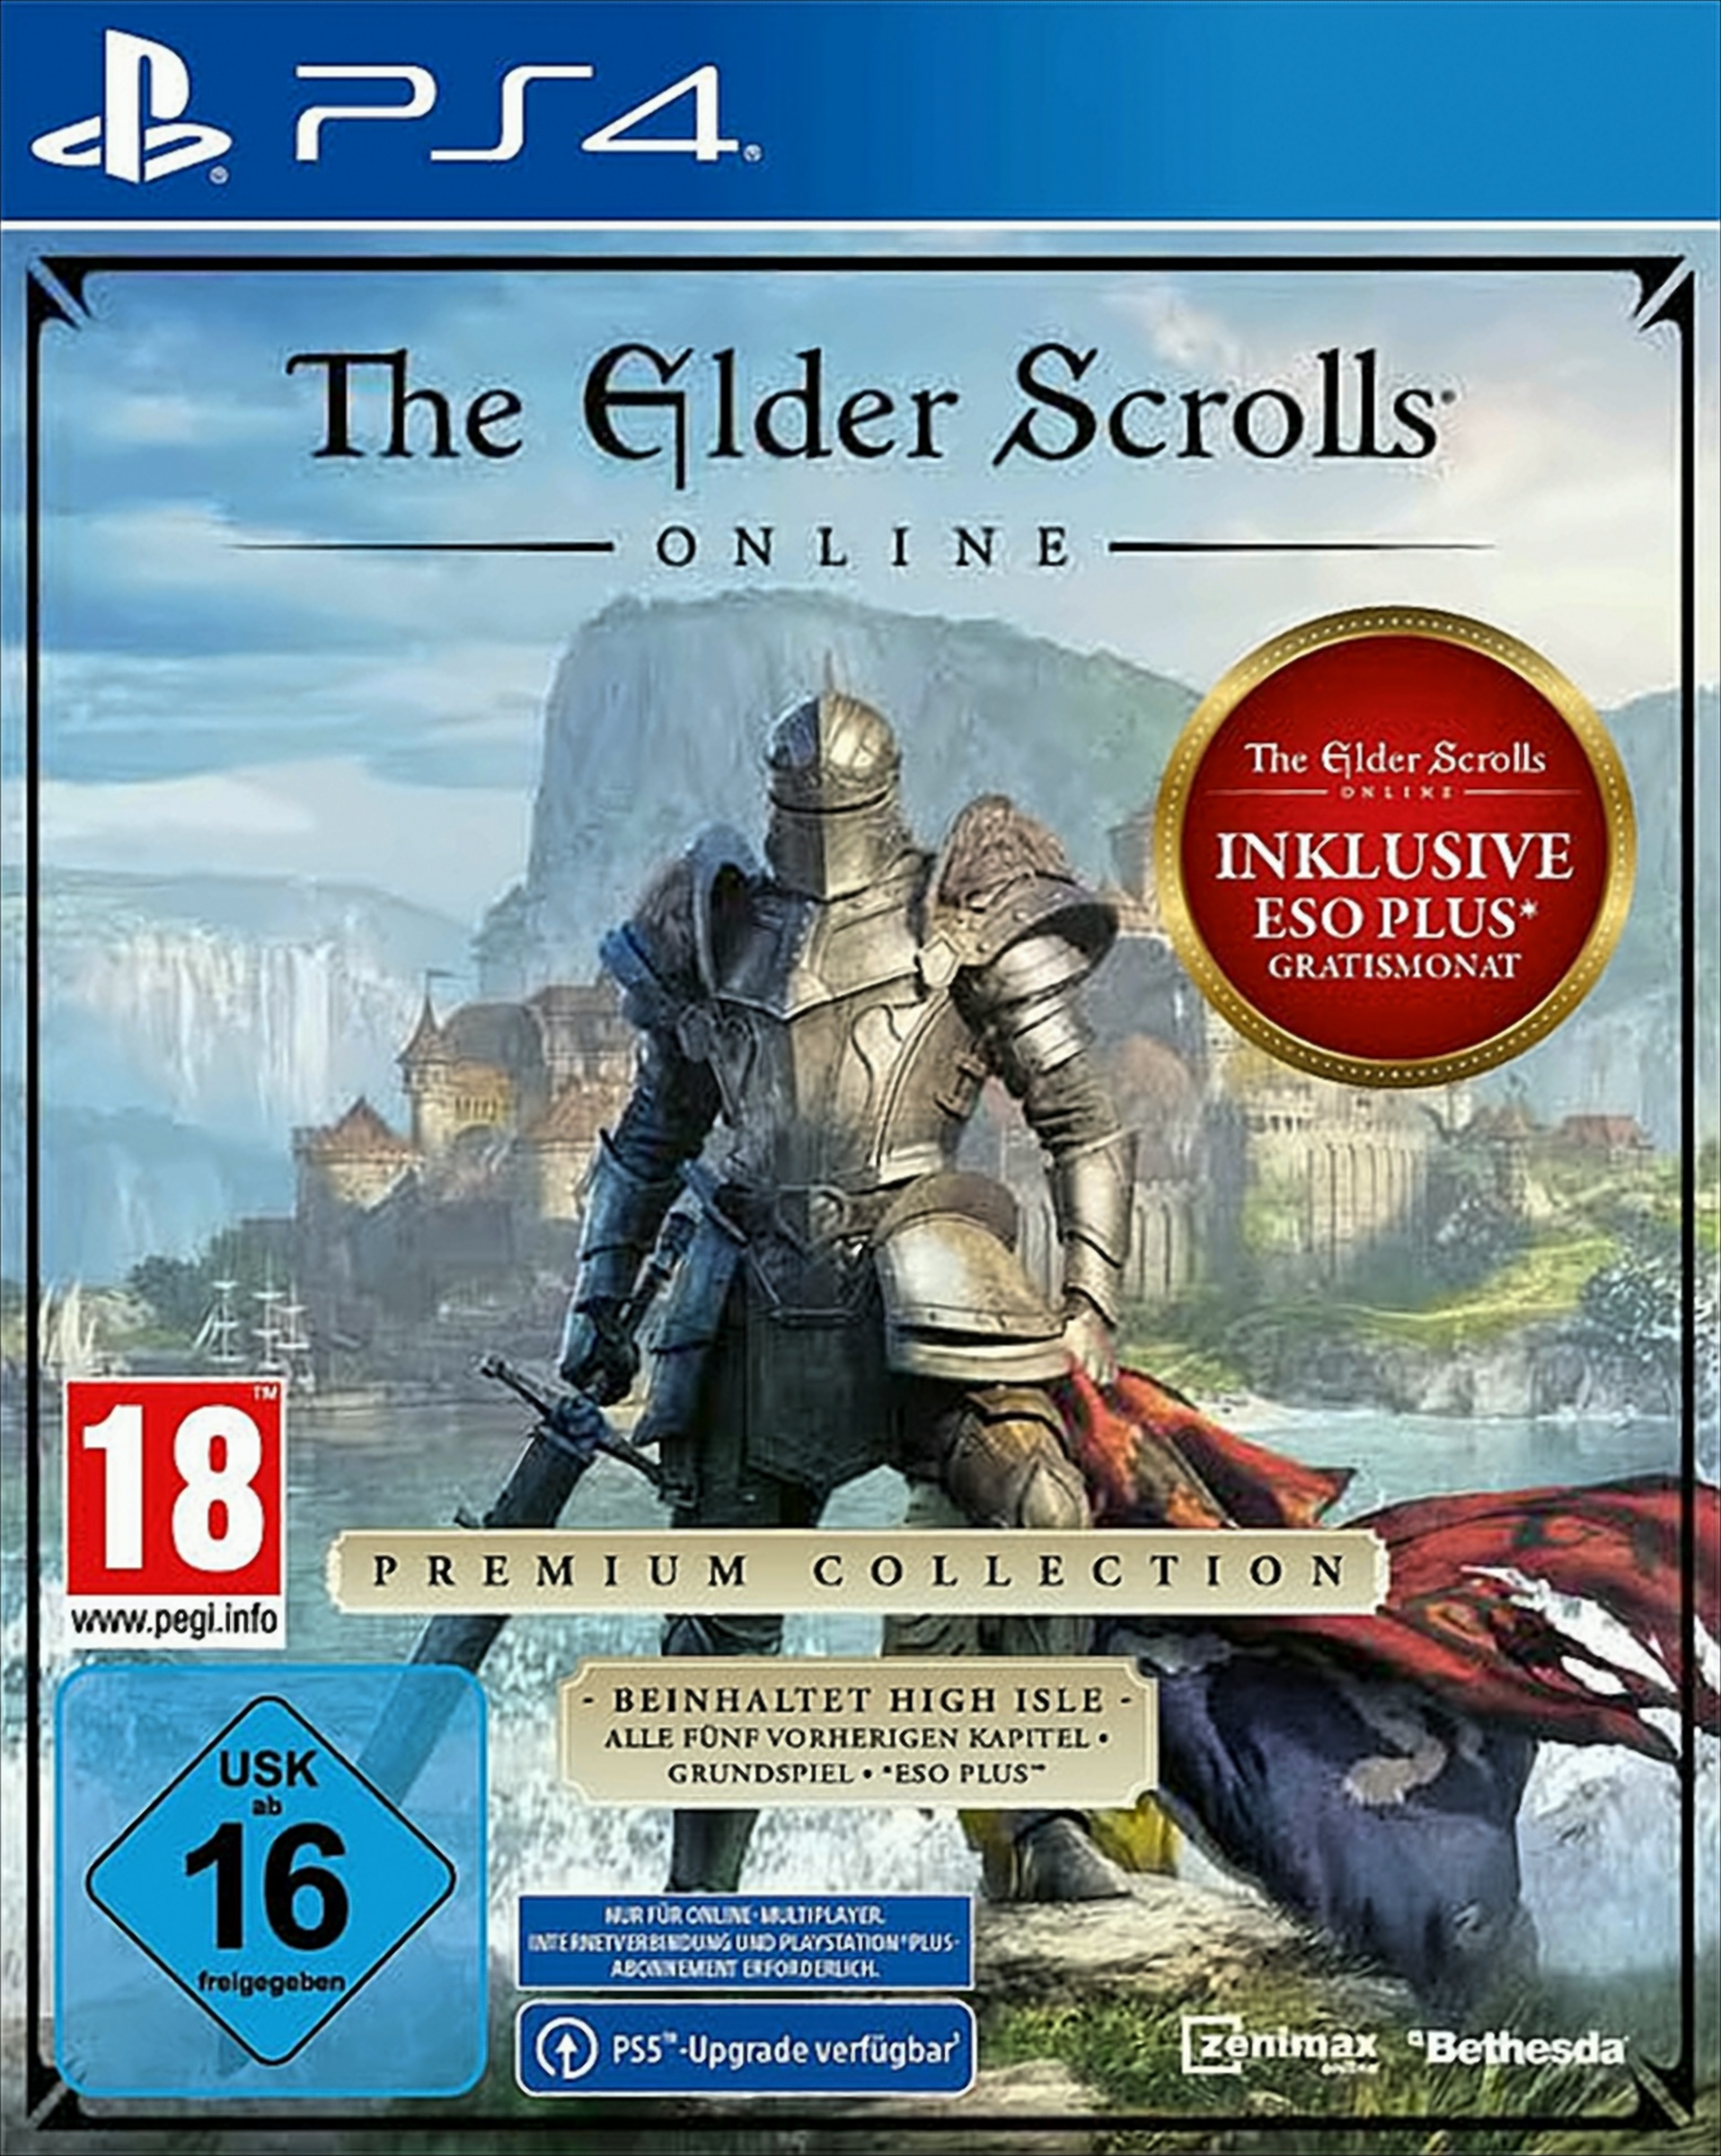 The Elder Scrolls Online: Premium Collection von Bethesda Softworks (ZeniMax)